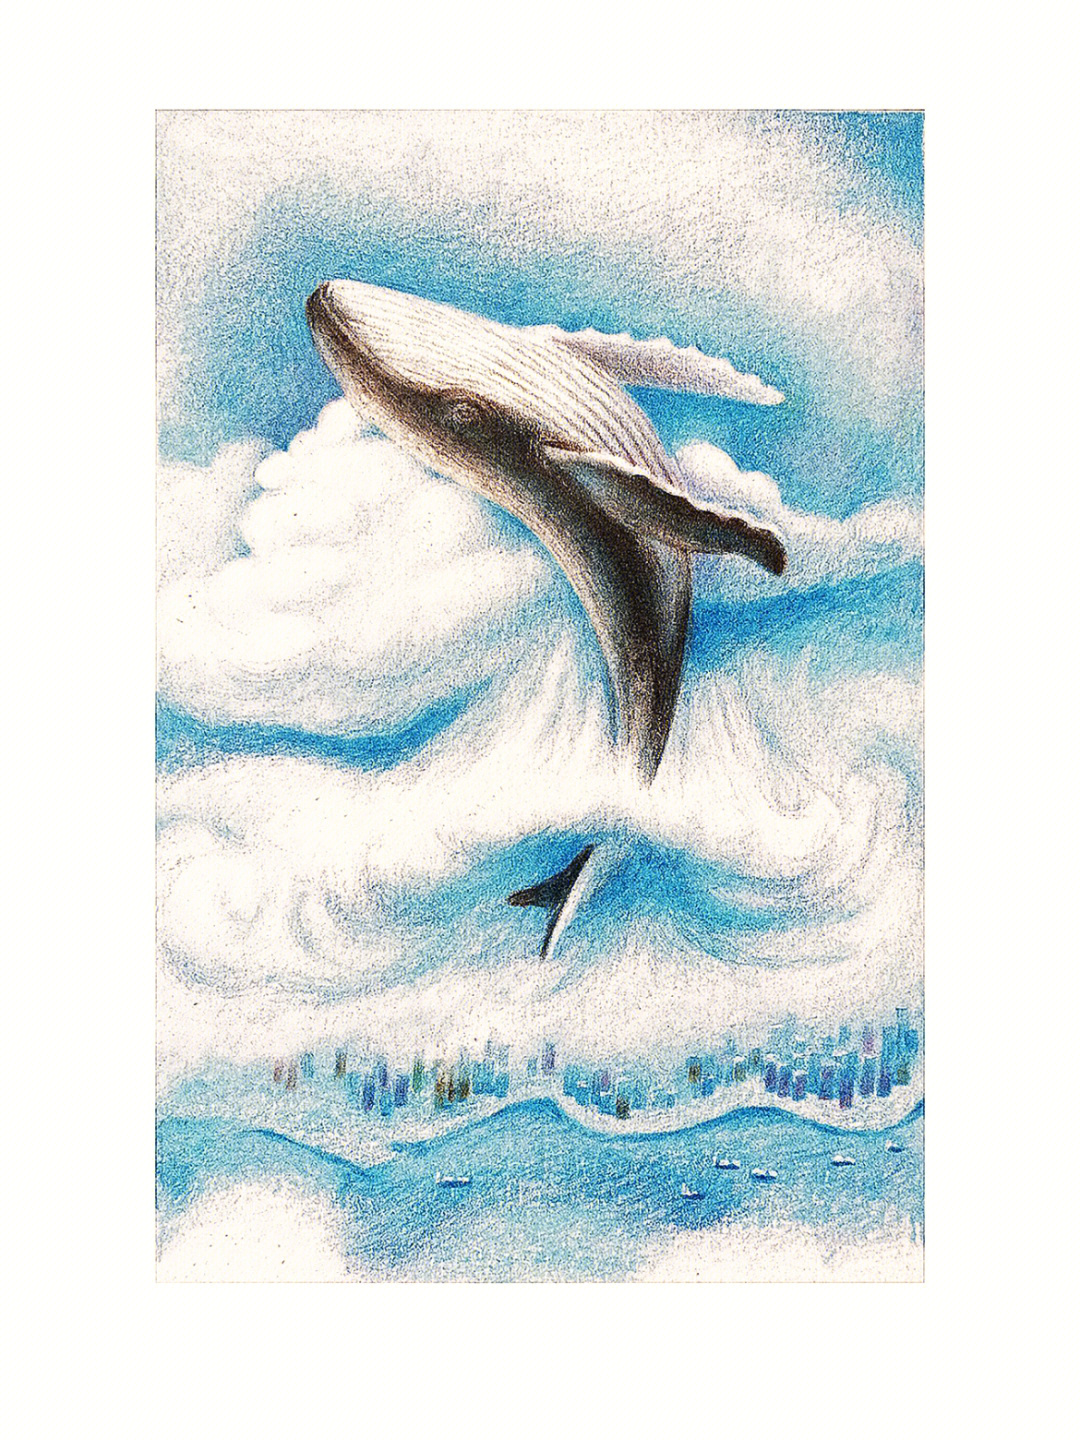 梦幻鲸鱼彩铅画图片